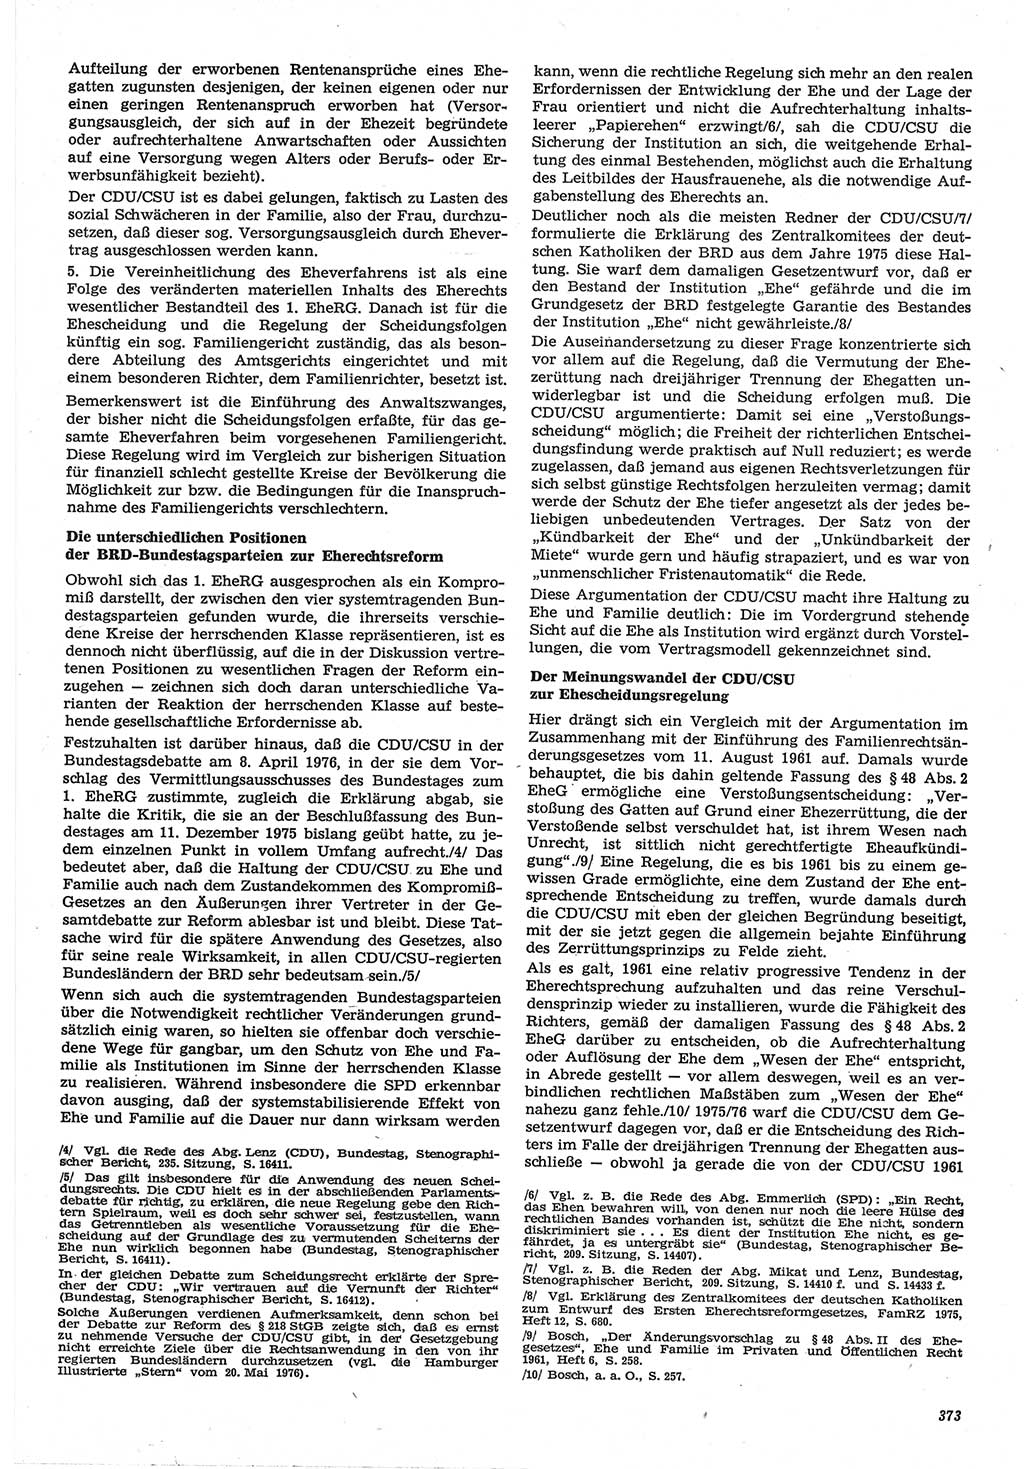 Neue Justiz (NJ), Zeitschrift für Recht und Rechtswissenschaft-Zeitschrift, sozialistisches Recht und Gesetzlichkeit, 31. Jahrgang 1977, Seite 373 (NJ DDR 1977, S. 373)